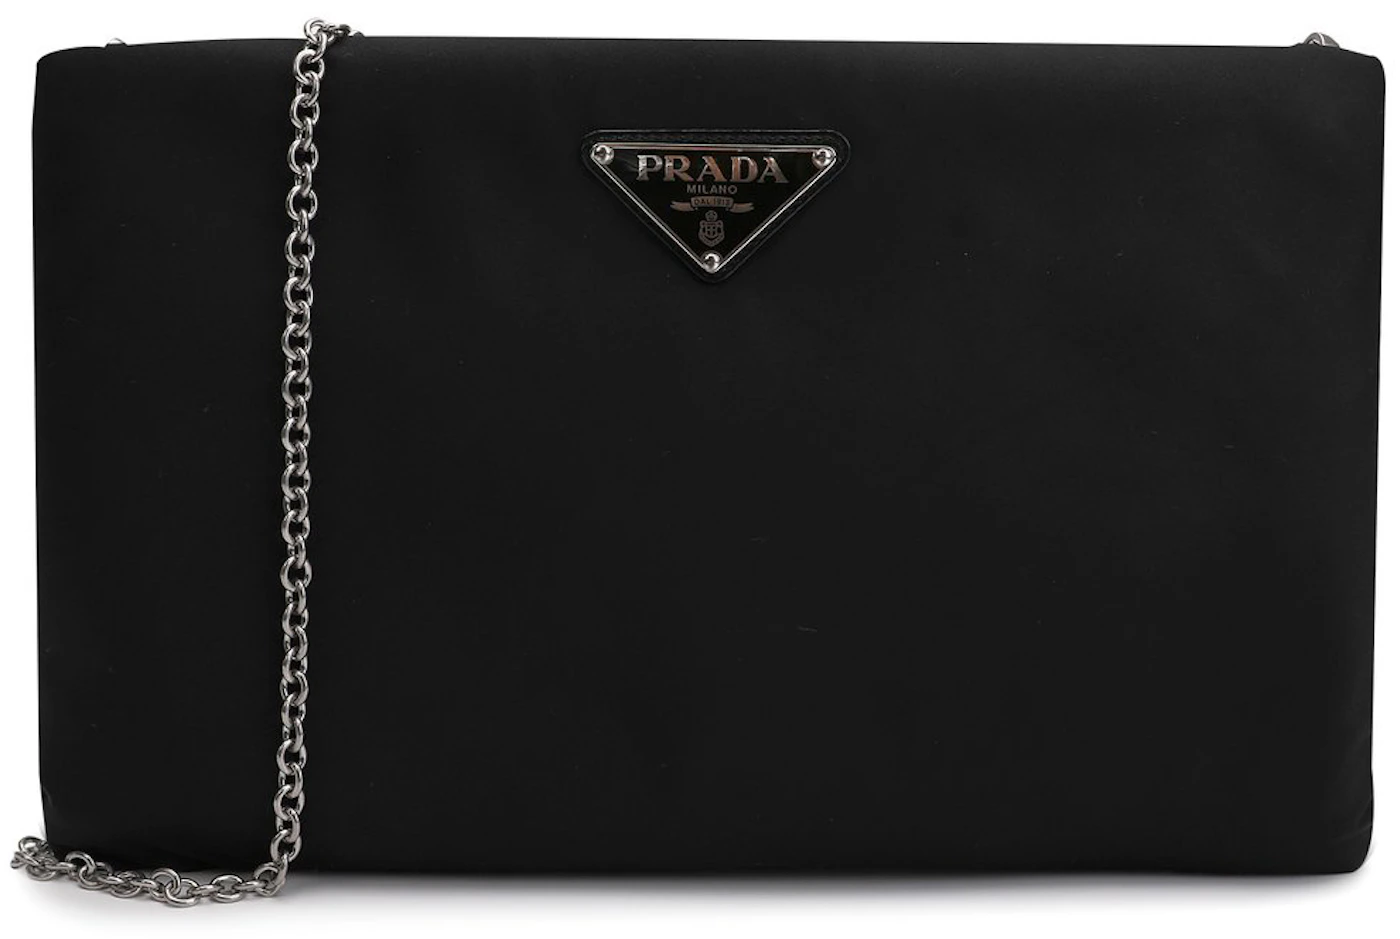 Prada Nylon Clutch Bag Small Black in Nylon - US